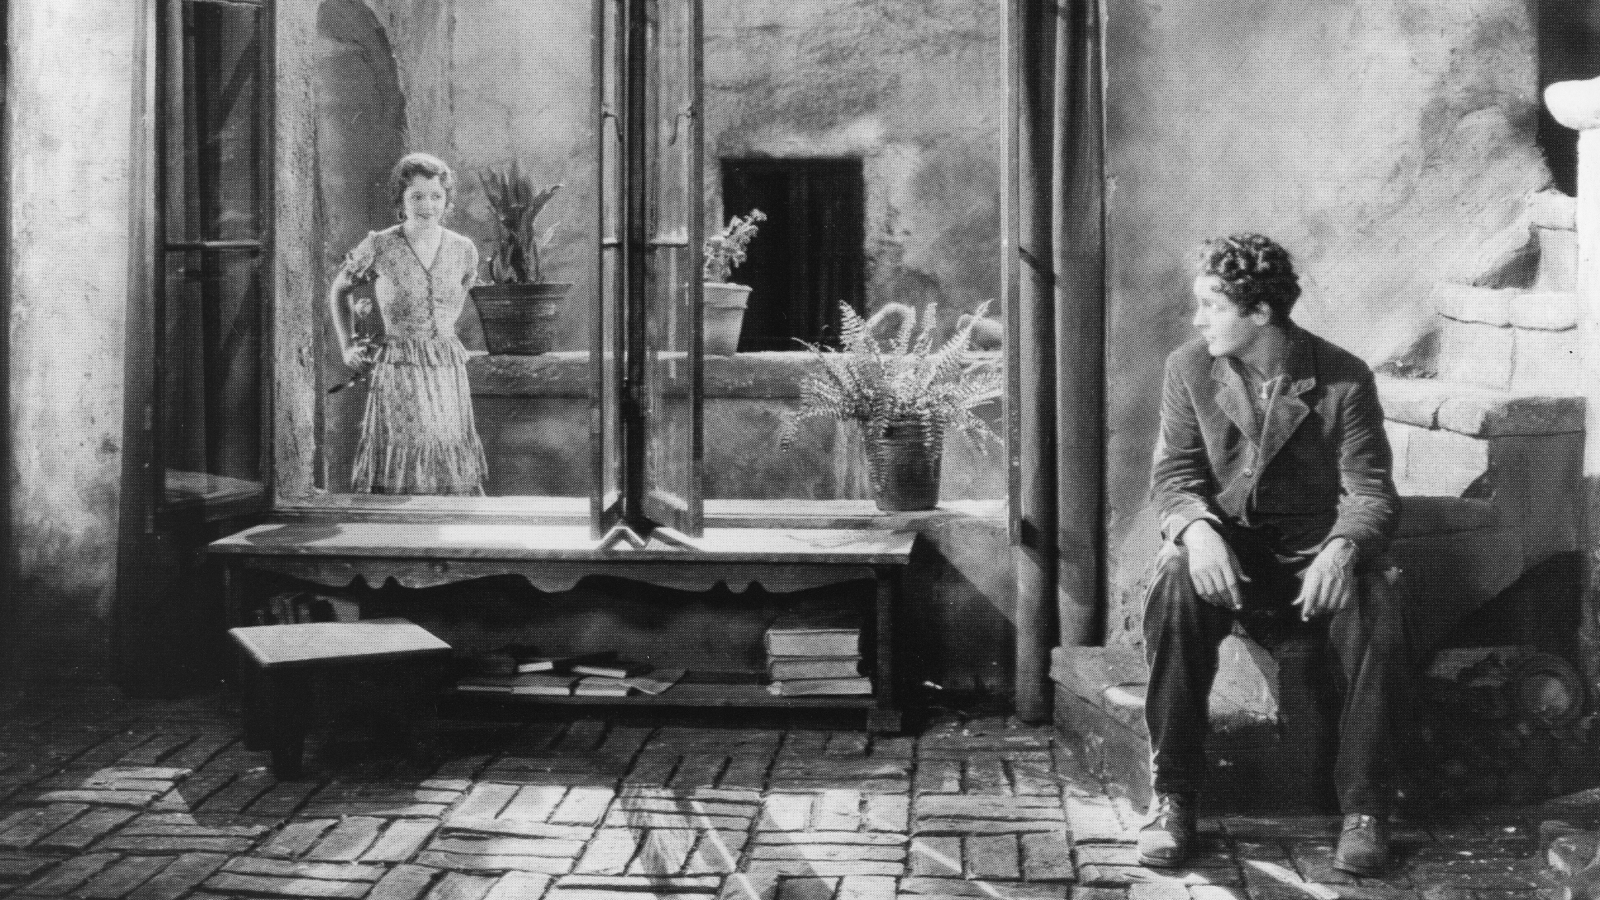 Kuvassa mies istuu alaportaalla ja katsoo naista, joka seisoo avoinna olevien isojen lasien takana.